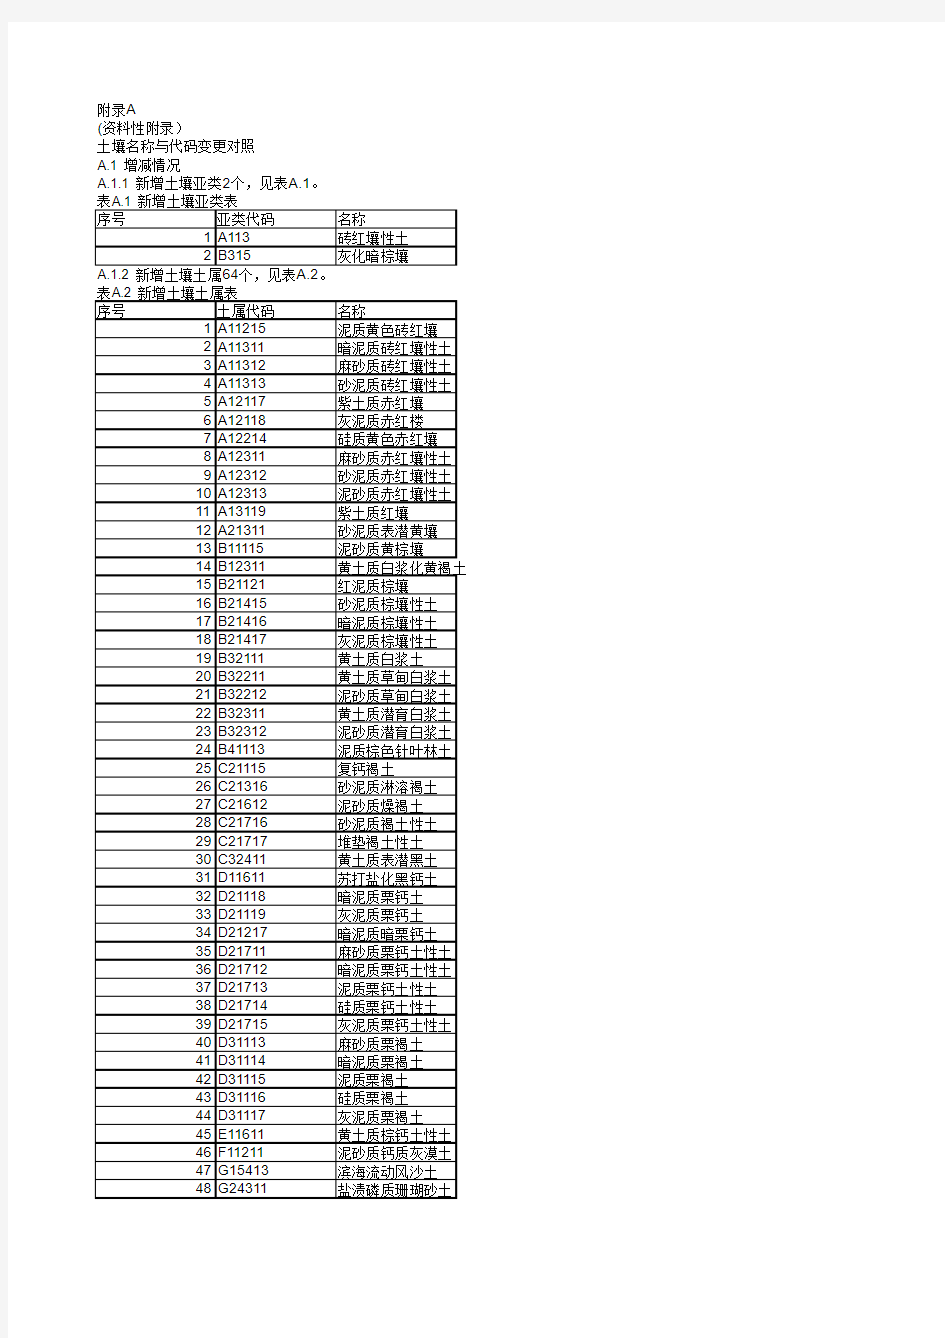 中国土壤分类代码对照表 GBT 19276-2009 对比 GBT 19276-2000 变更表